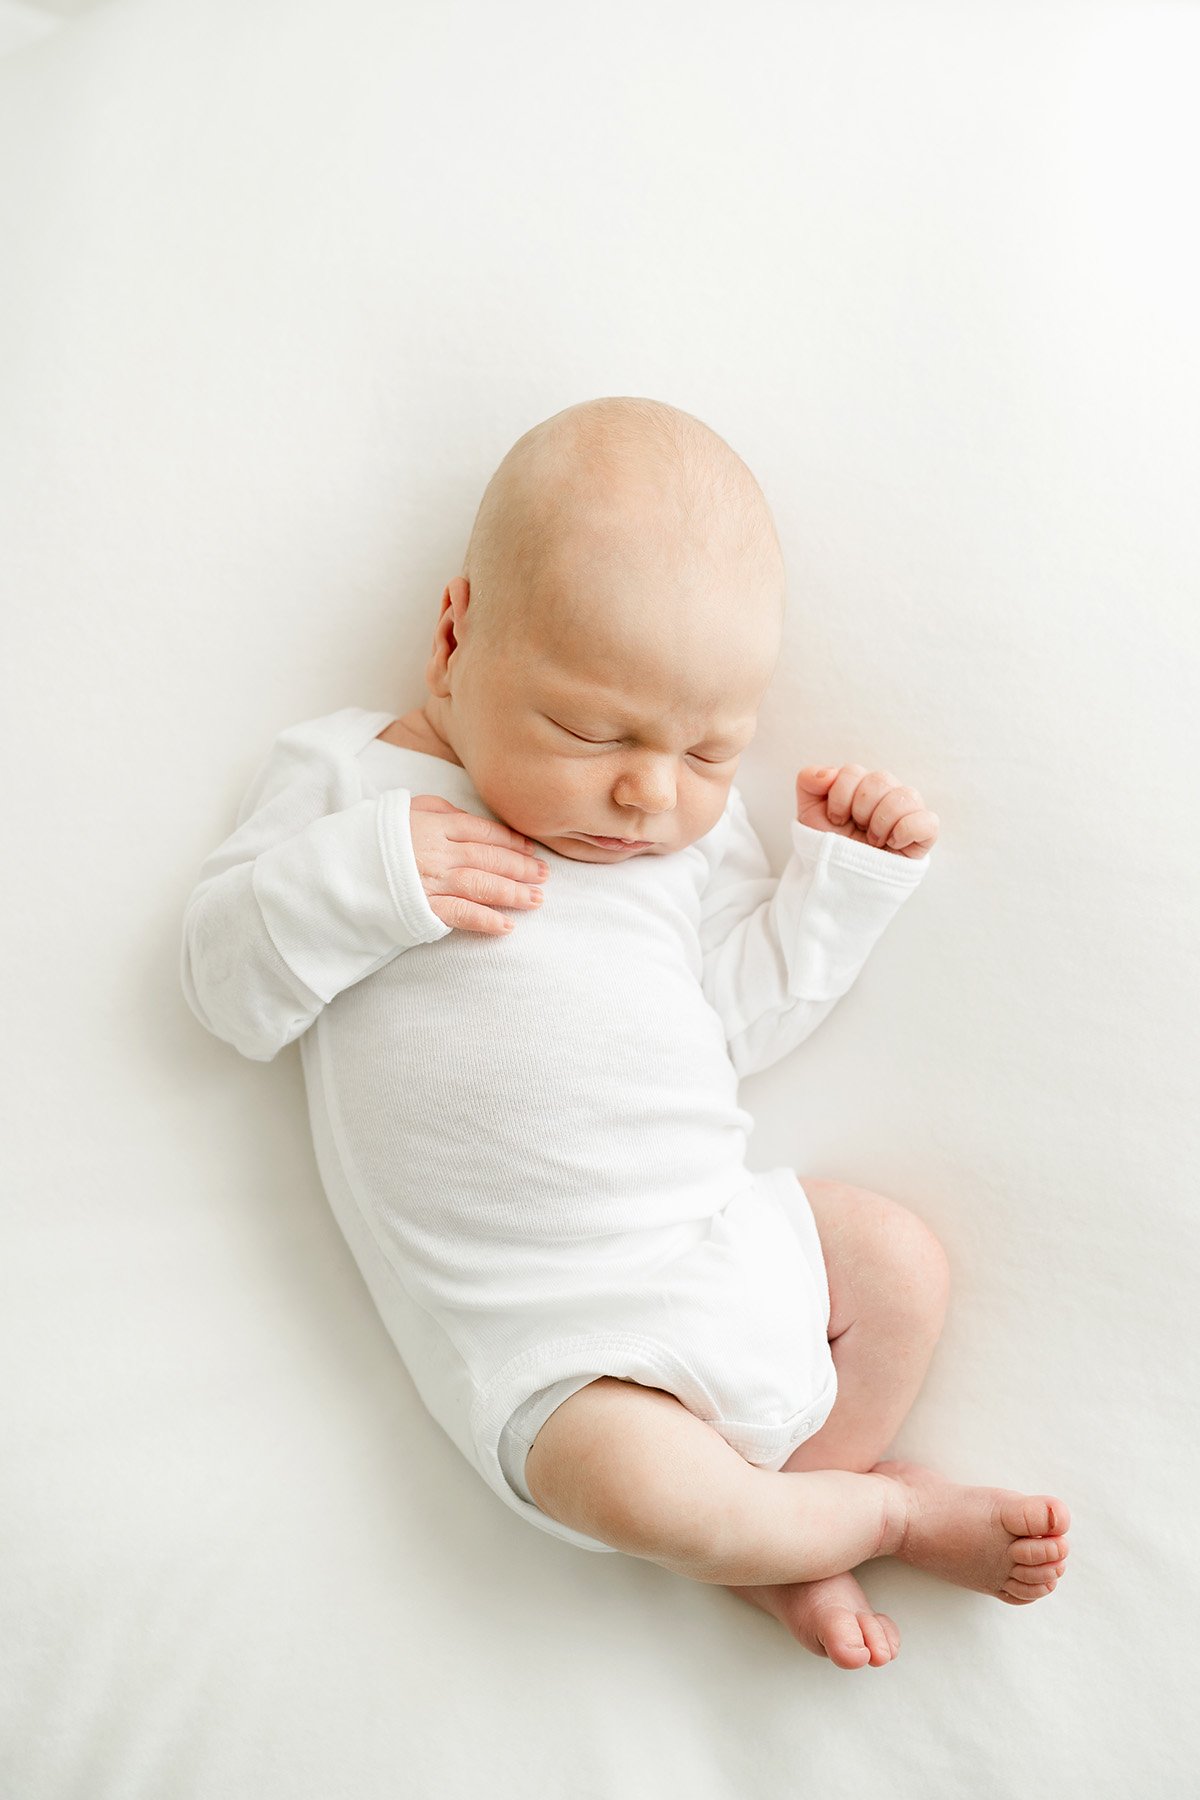 Natural-Light-Airy-Newborn-Photographer-Louisville-KY-Julie-Brock-Photography